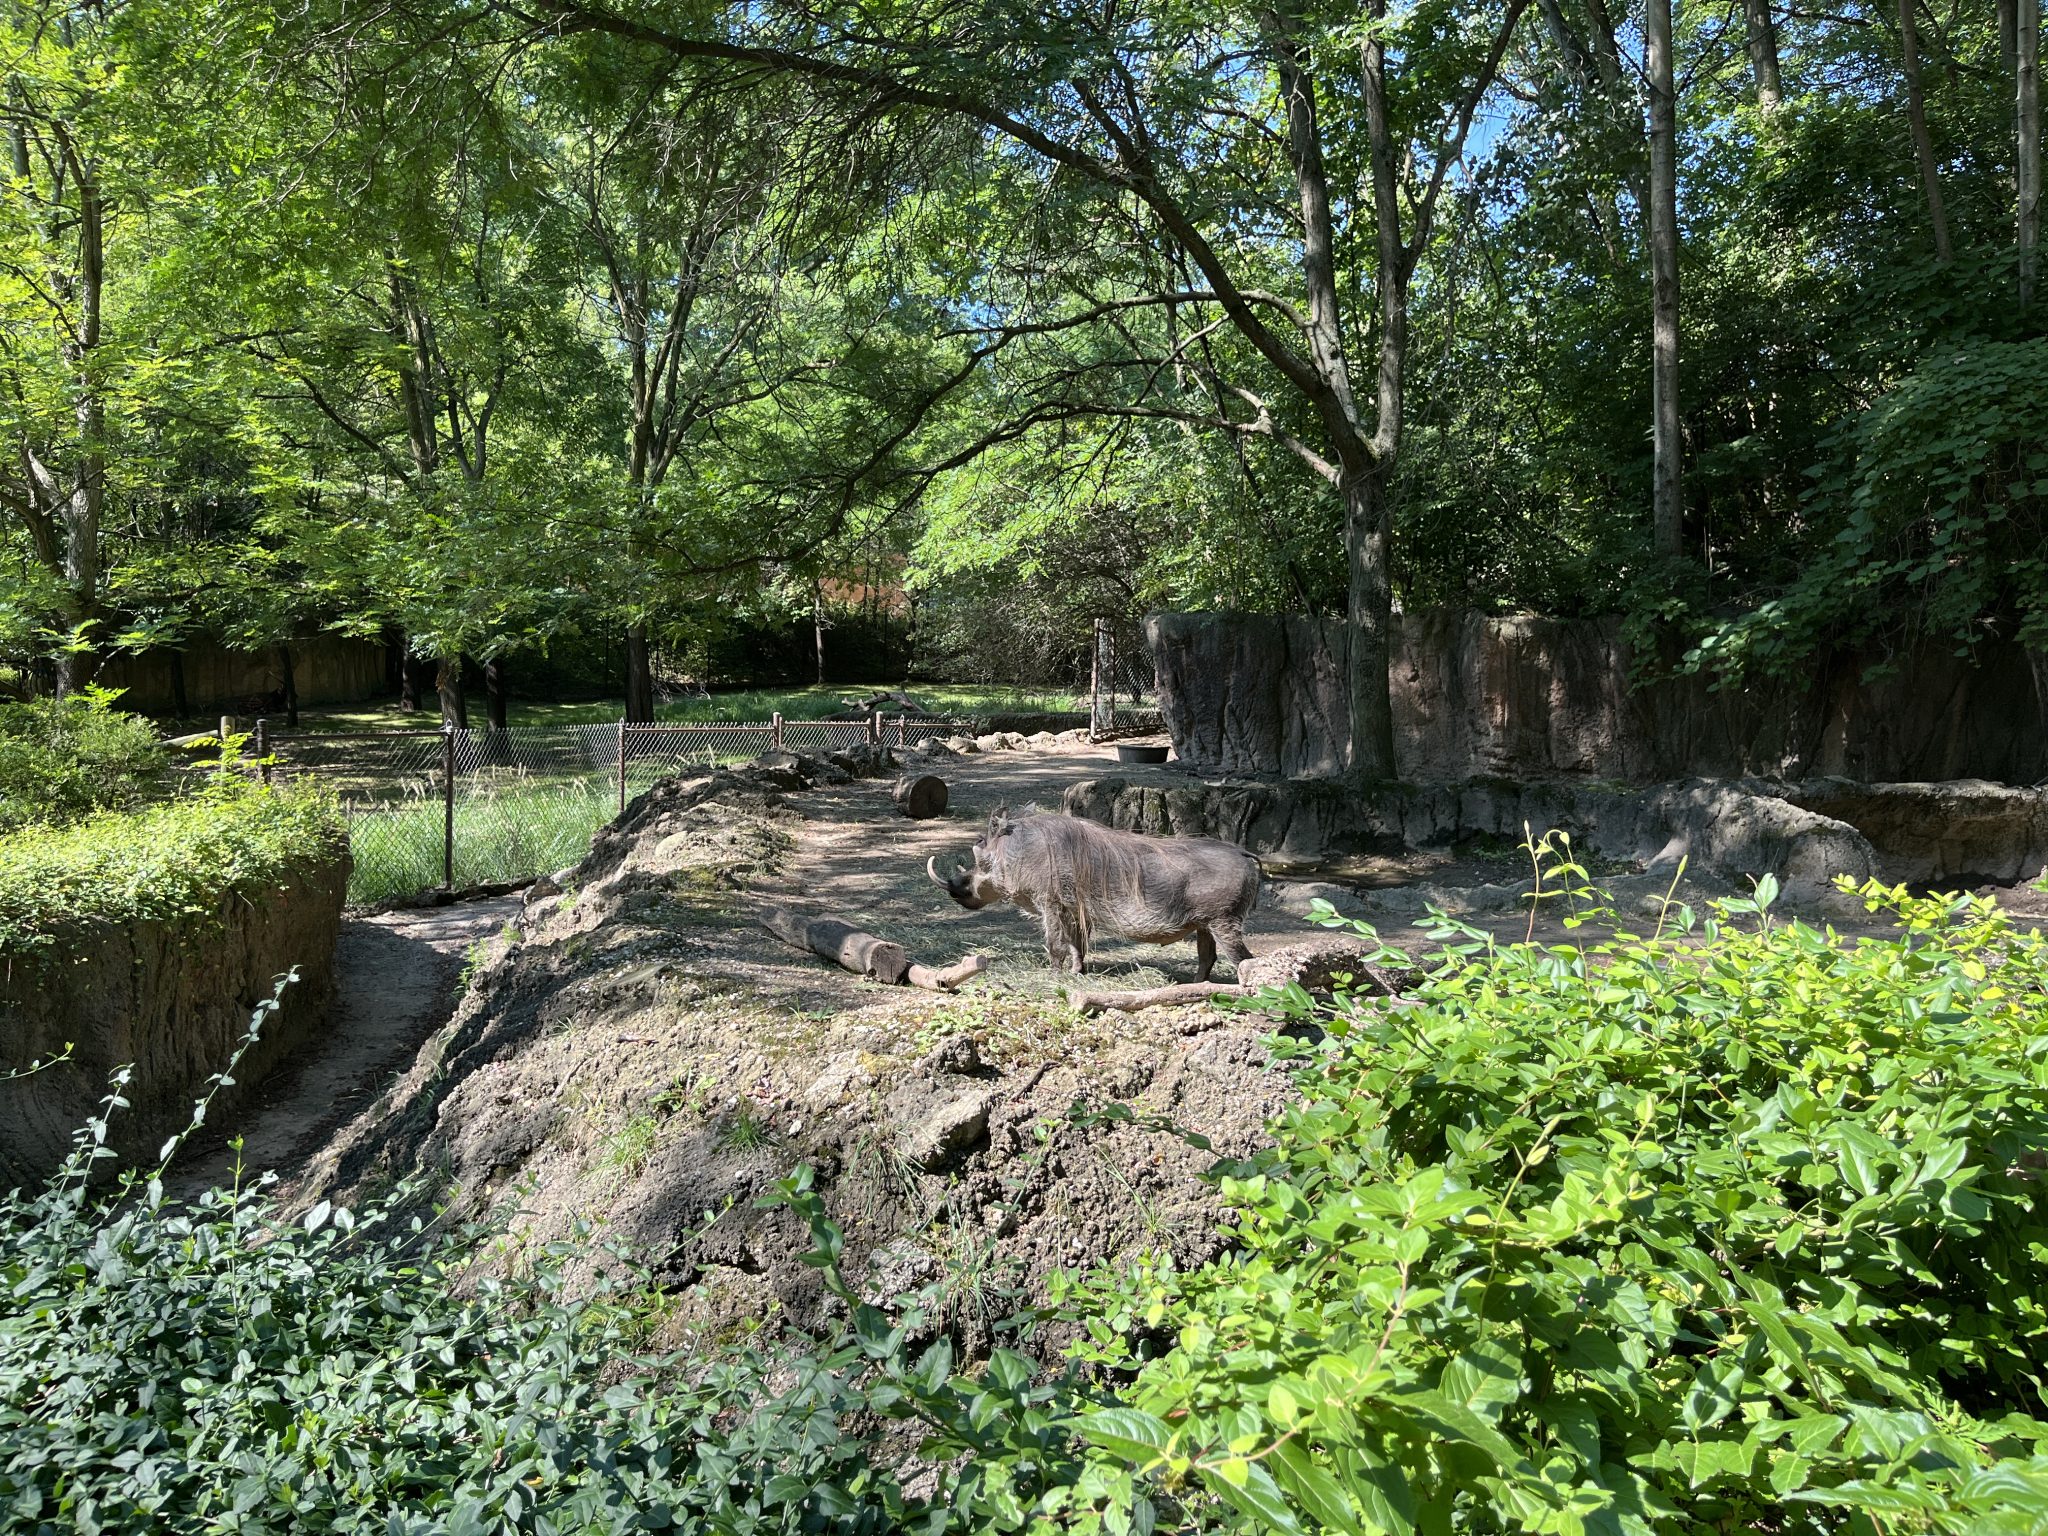 Warthog at the zoo